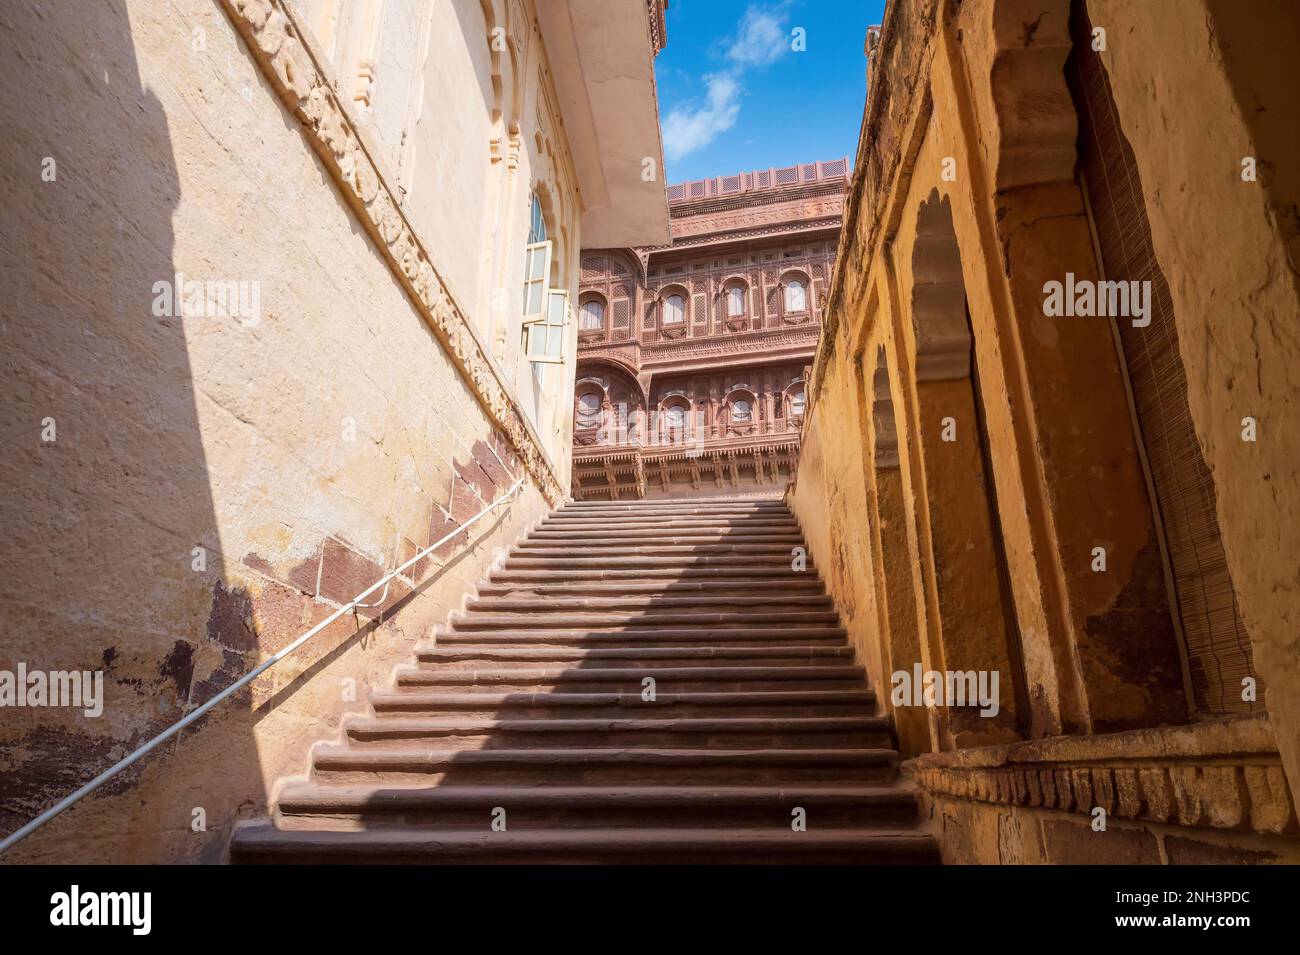 Anciens escaliers à l'intérieur du fort de Mehrangarh, Jodhpur, Rajasthan, Inde. Architecture célèbre avec des sculptures complexes et de vastes cours. Banque D'Images